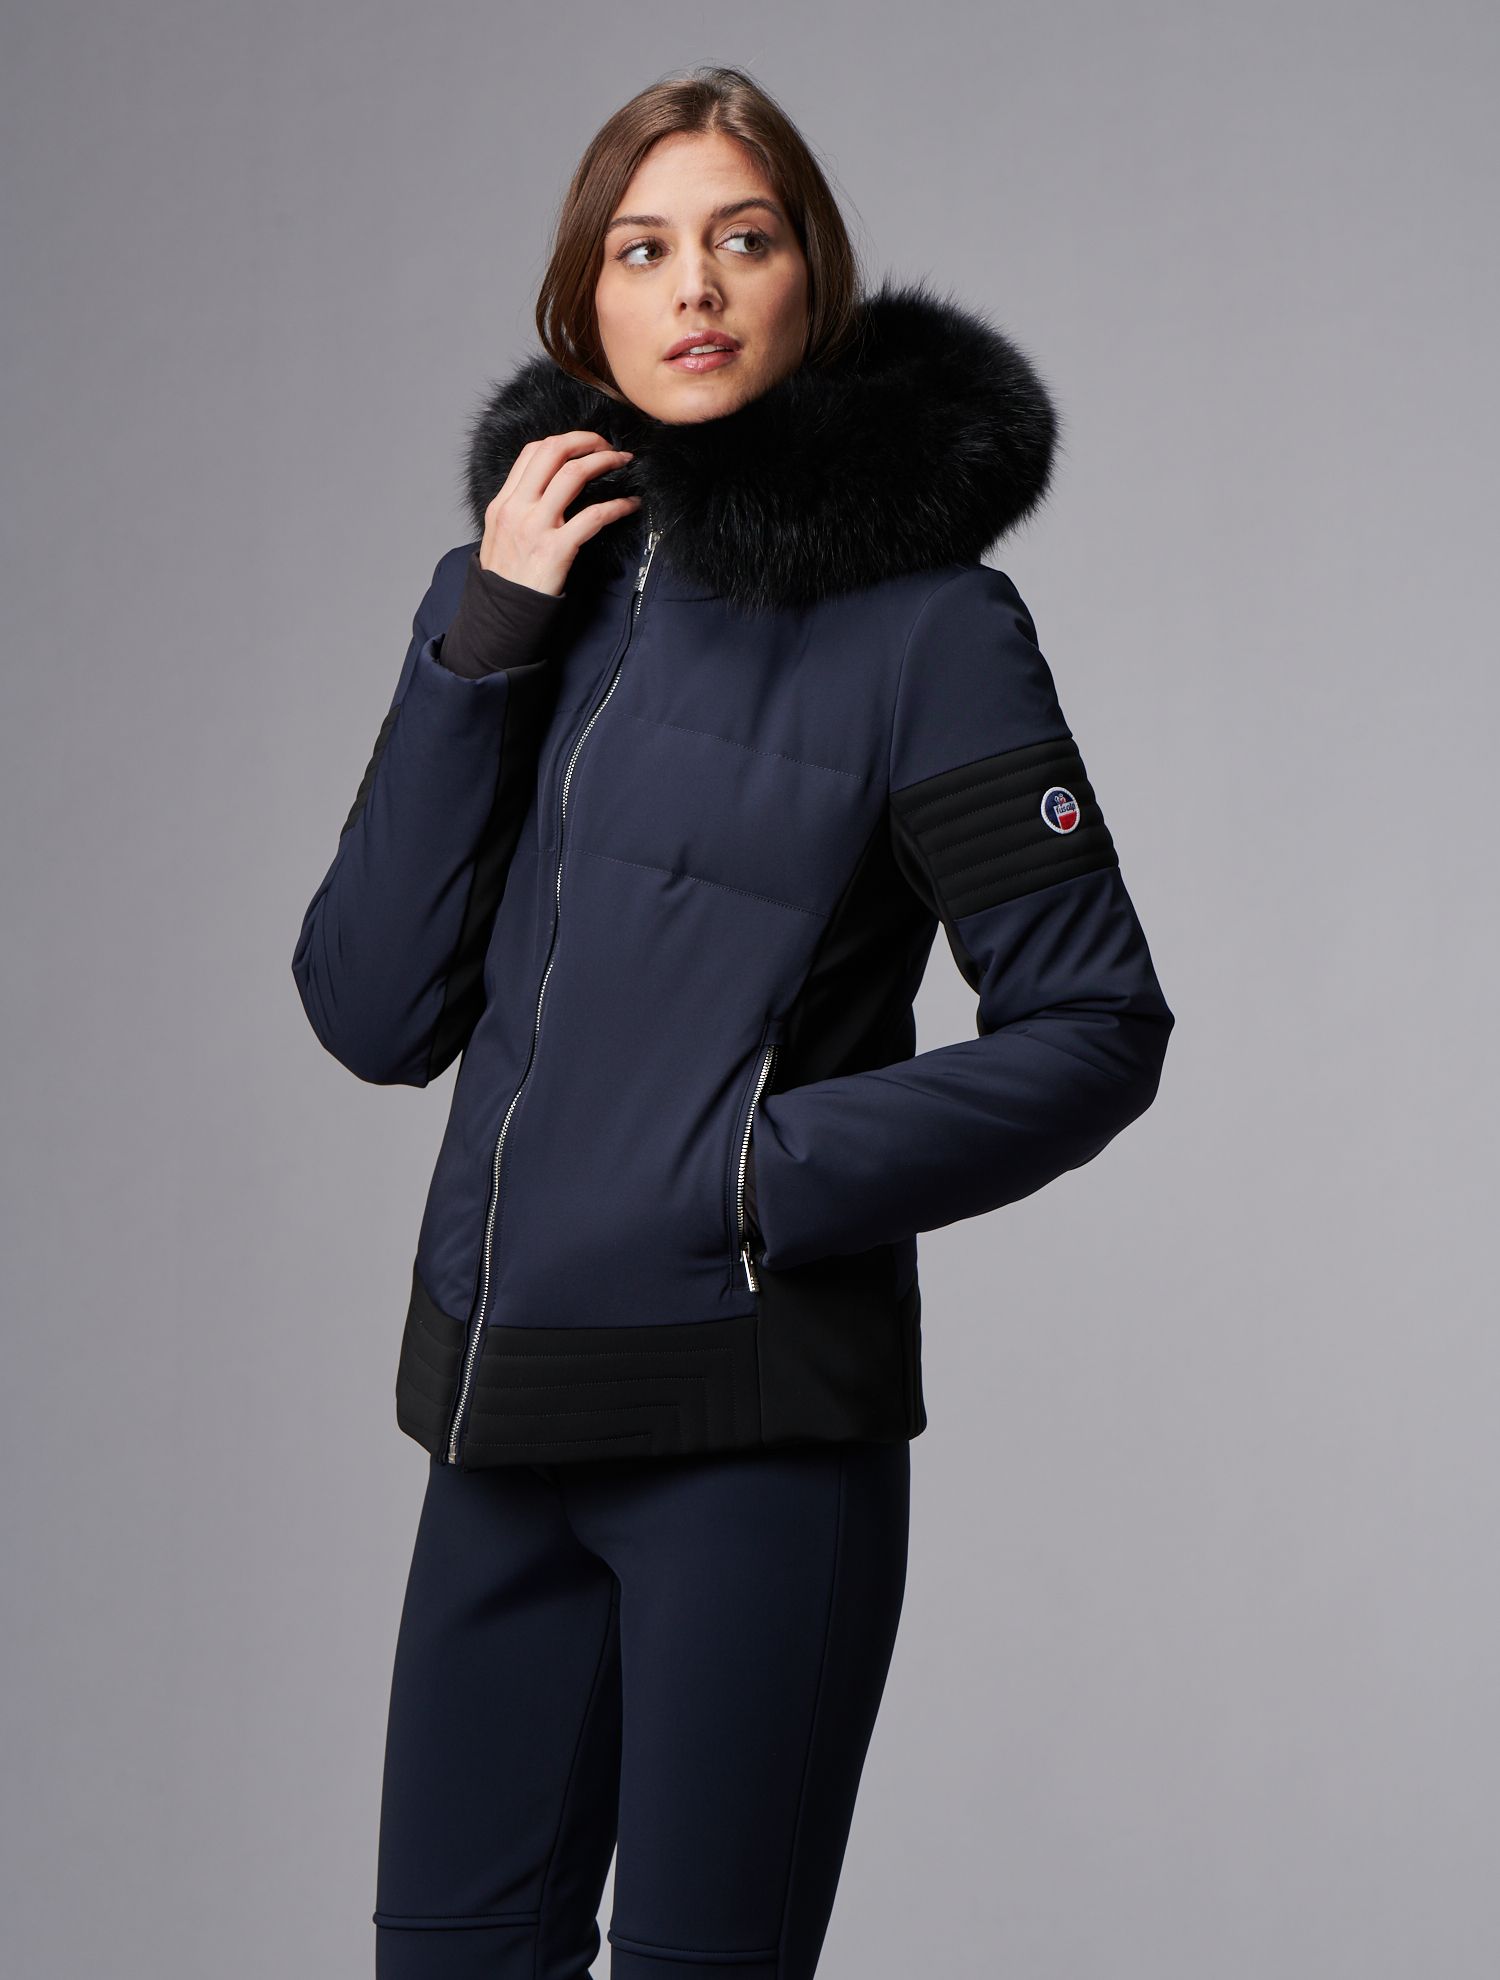 Gardena III jacket: Fusalp iconic ski jacket for women